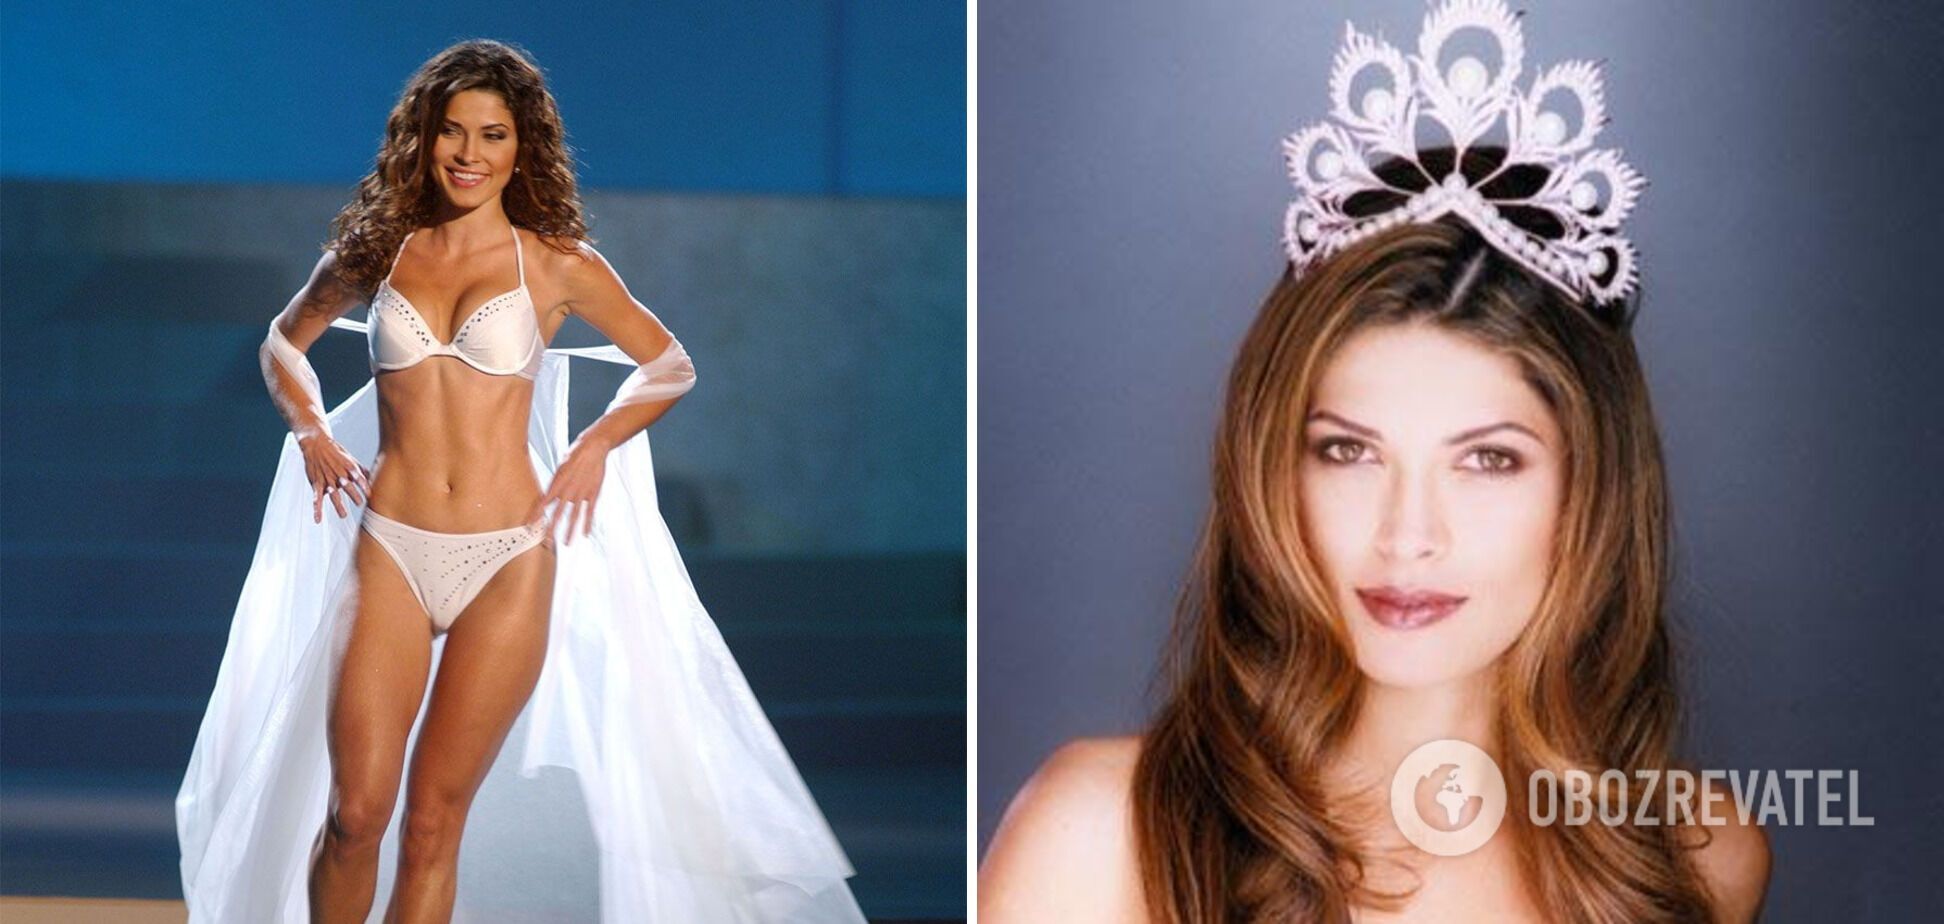 Жюстина Патино победила в конкурсе Мисс Вселенная 2002 года